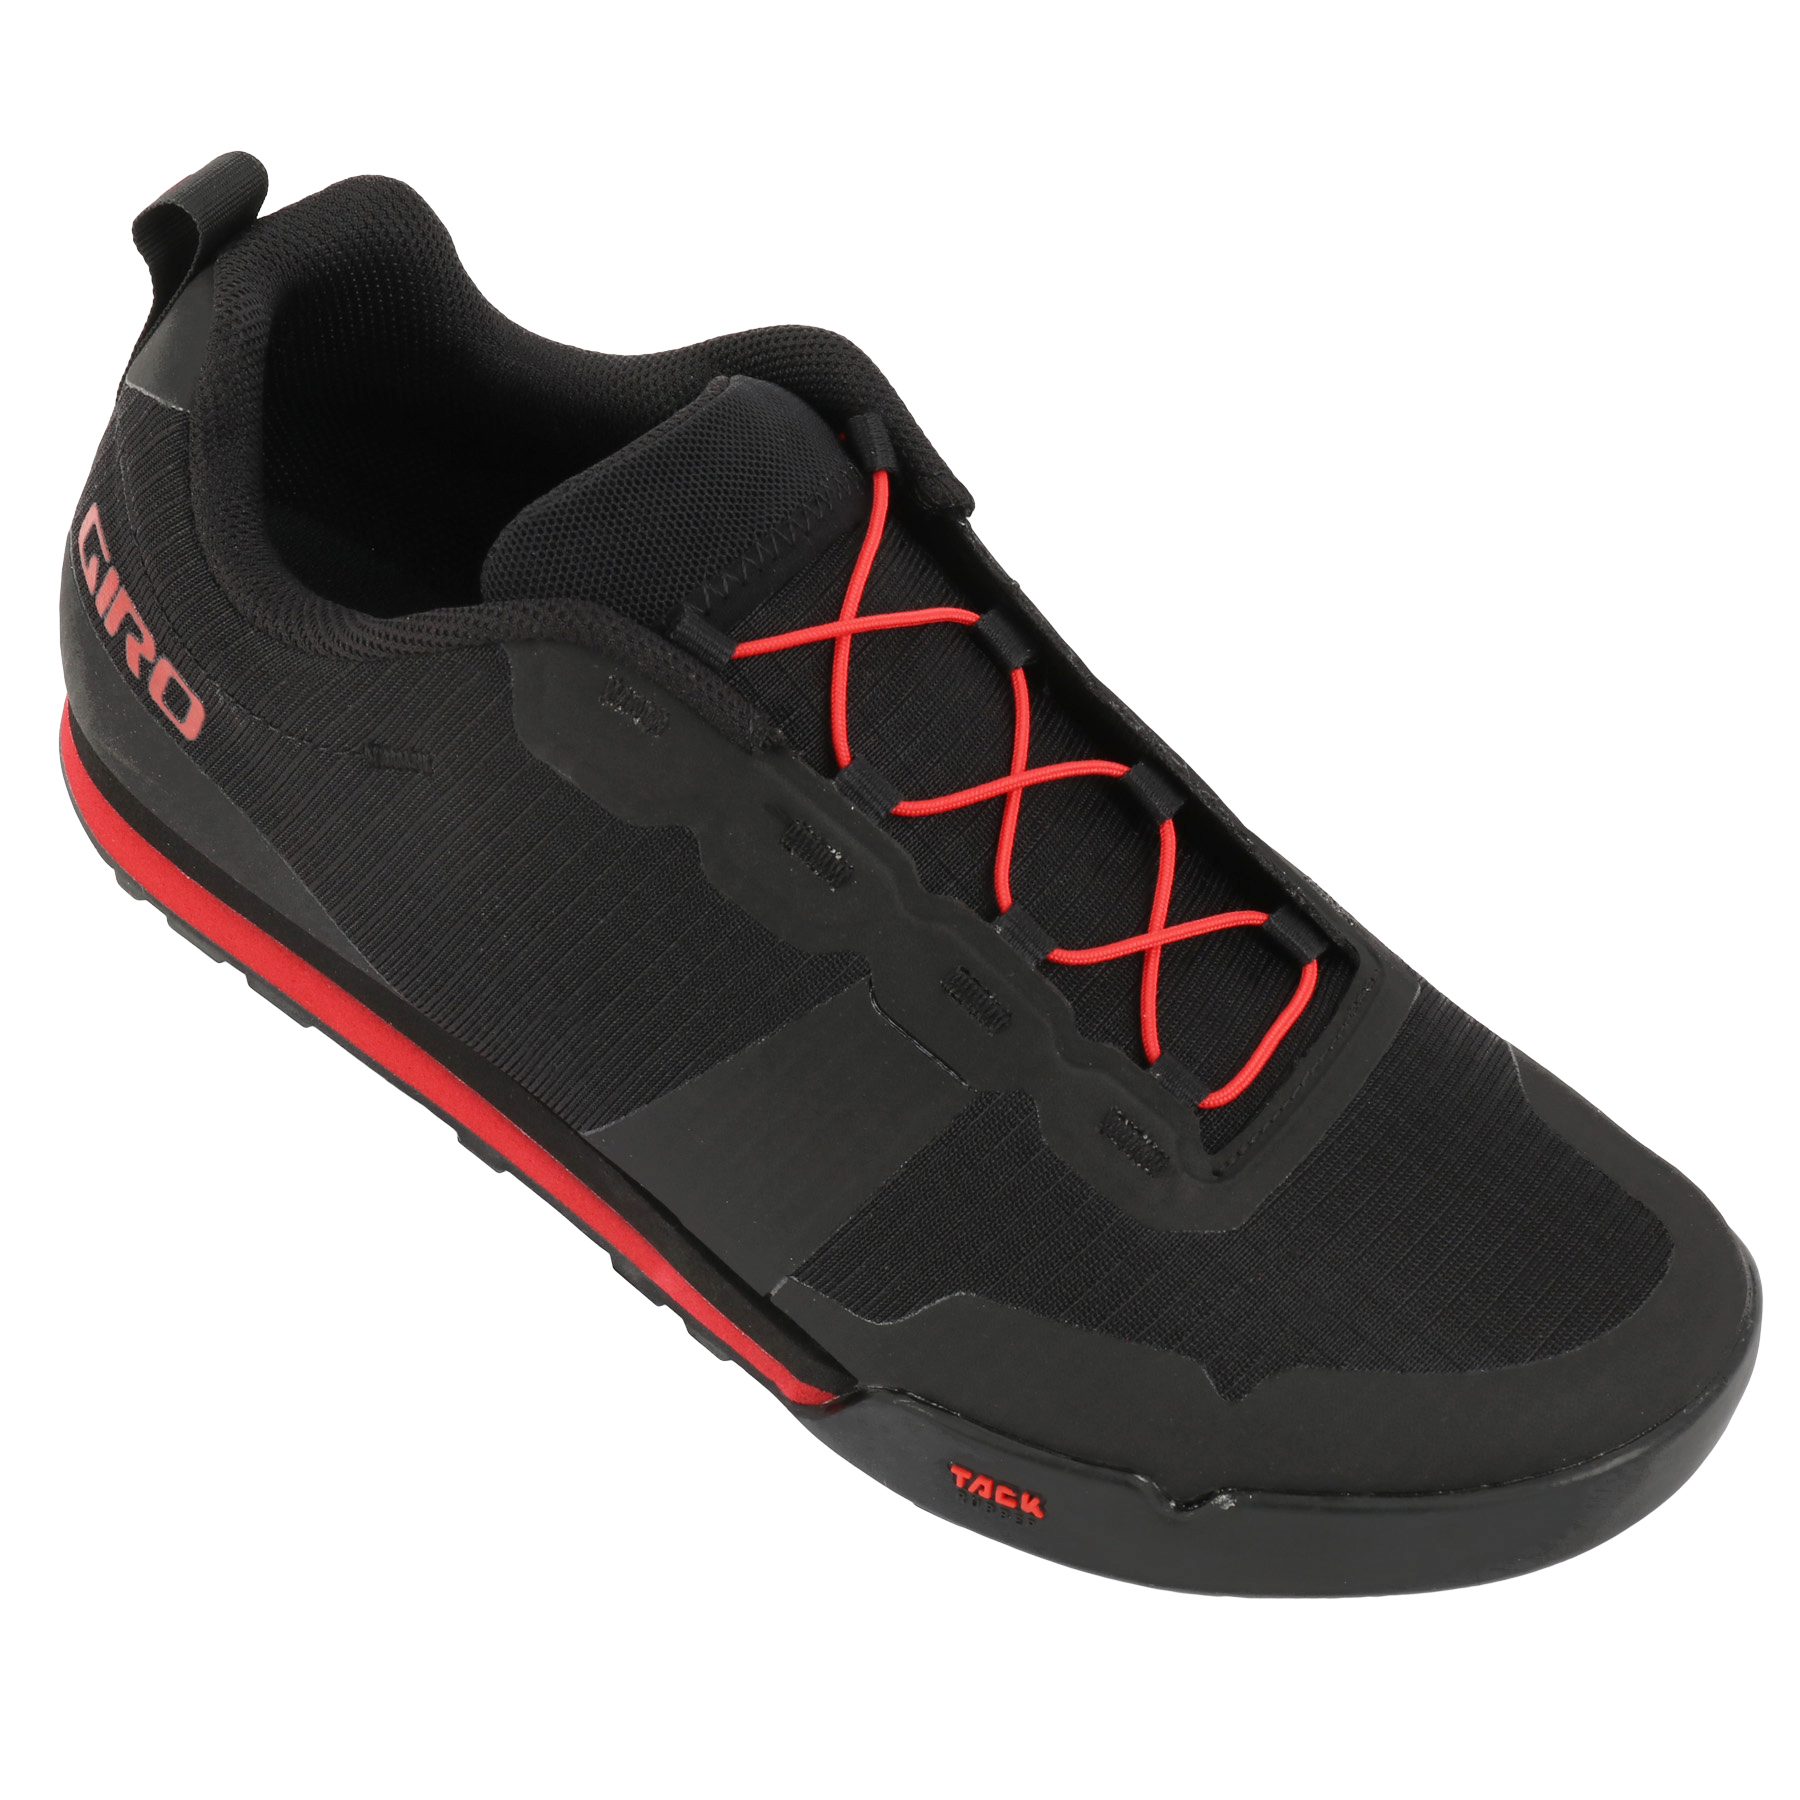 Immagine prodotto da Giro Scarpe Uomo - Tracker Fastlace Flatpedal - black/bright red